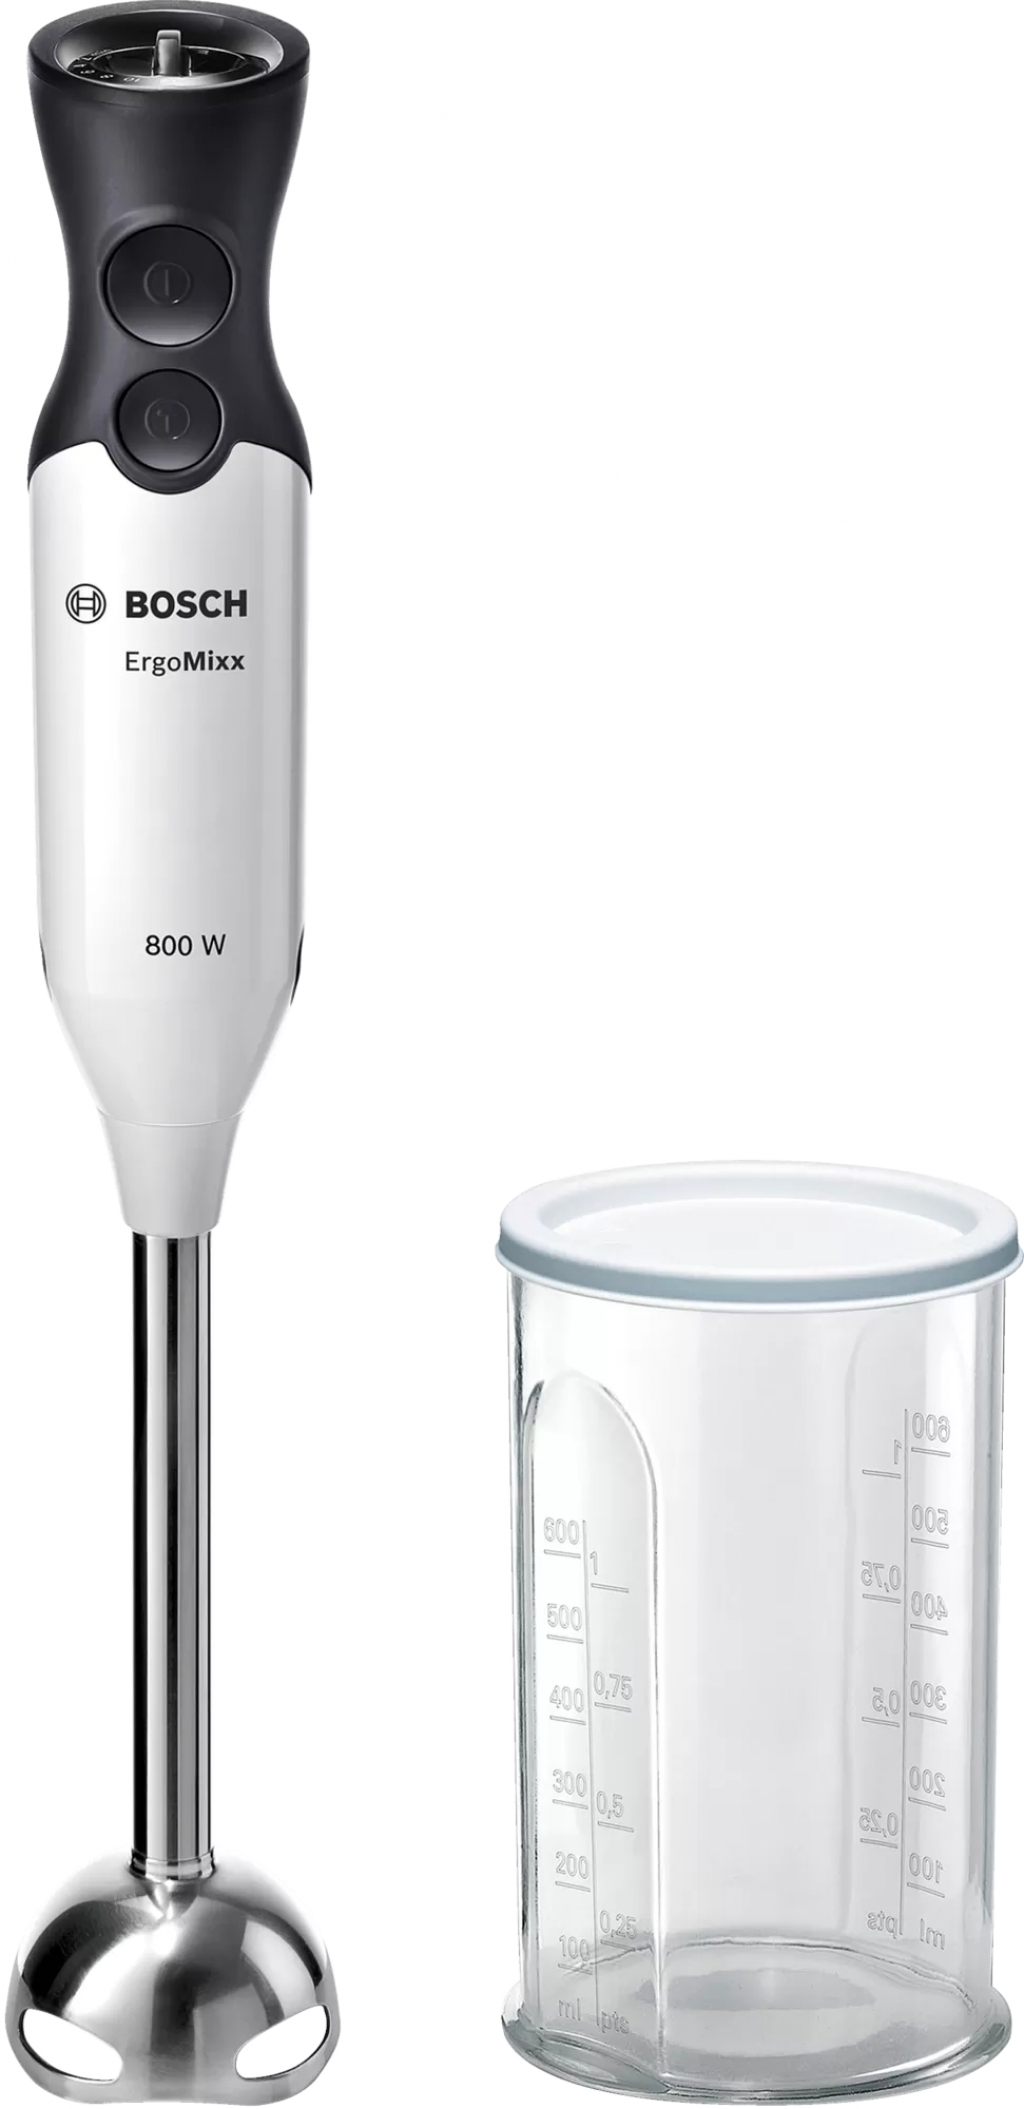 Бяла техника Bosch MS61A4110, Blender, ErgoMixx, 800 W, Included transparent jug, Whiteна ниска цена с бърза доставка